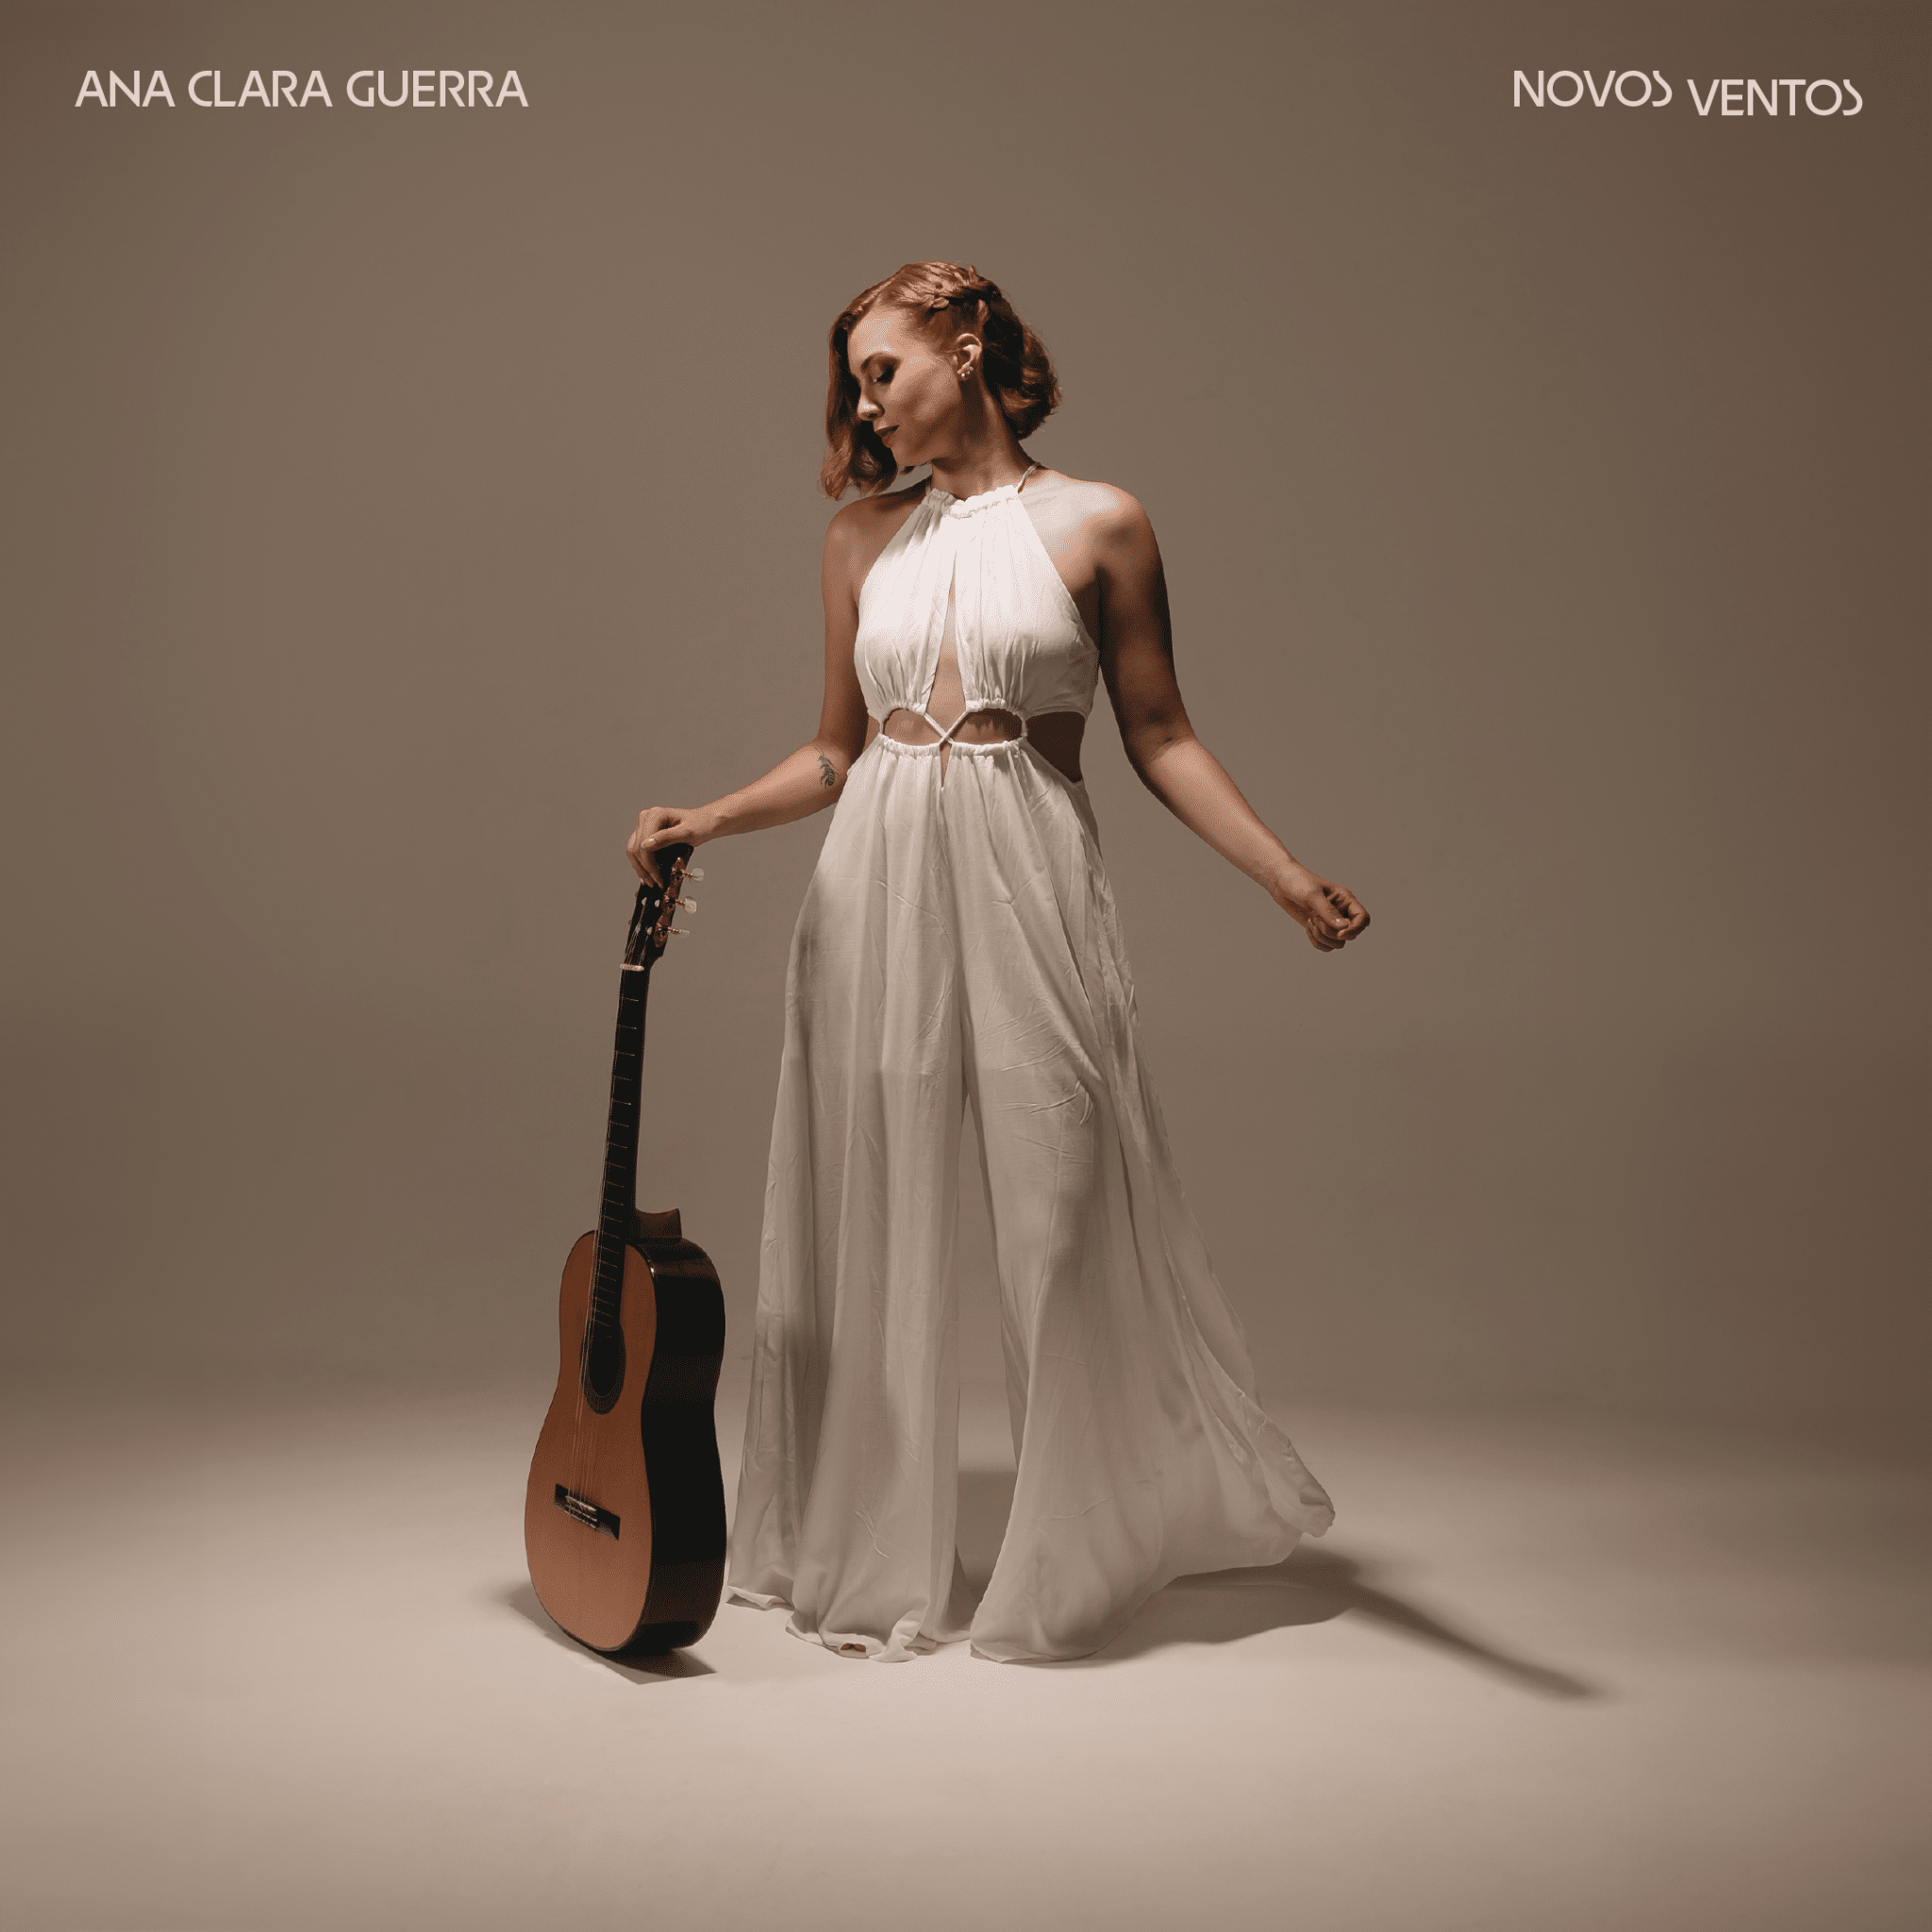 revistaprosaversoearte.com - Ana Clara Guerra lança seu álbum de estreia 'Novos Ventos'